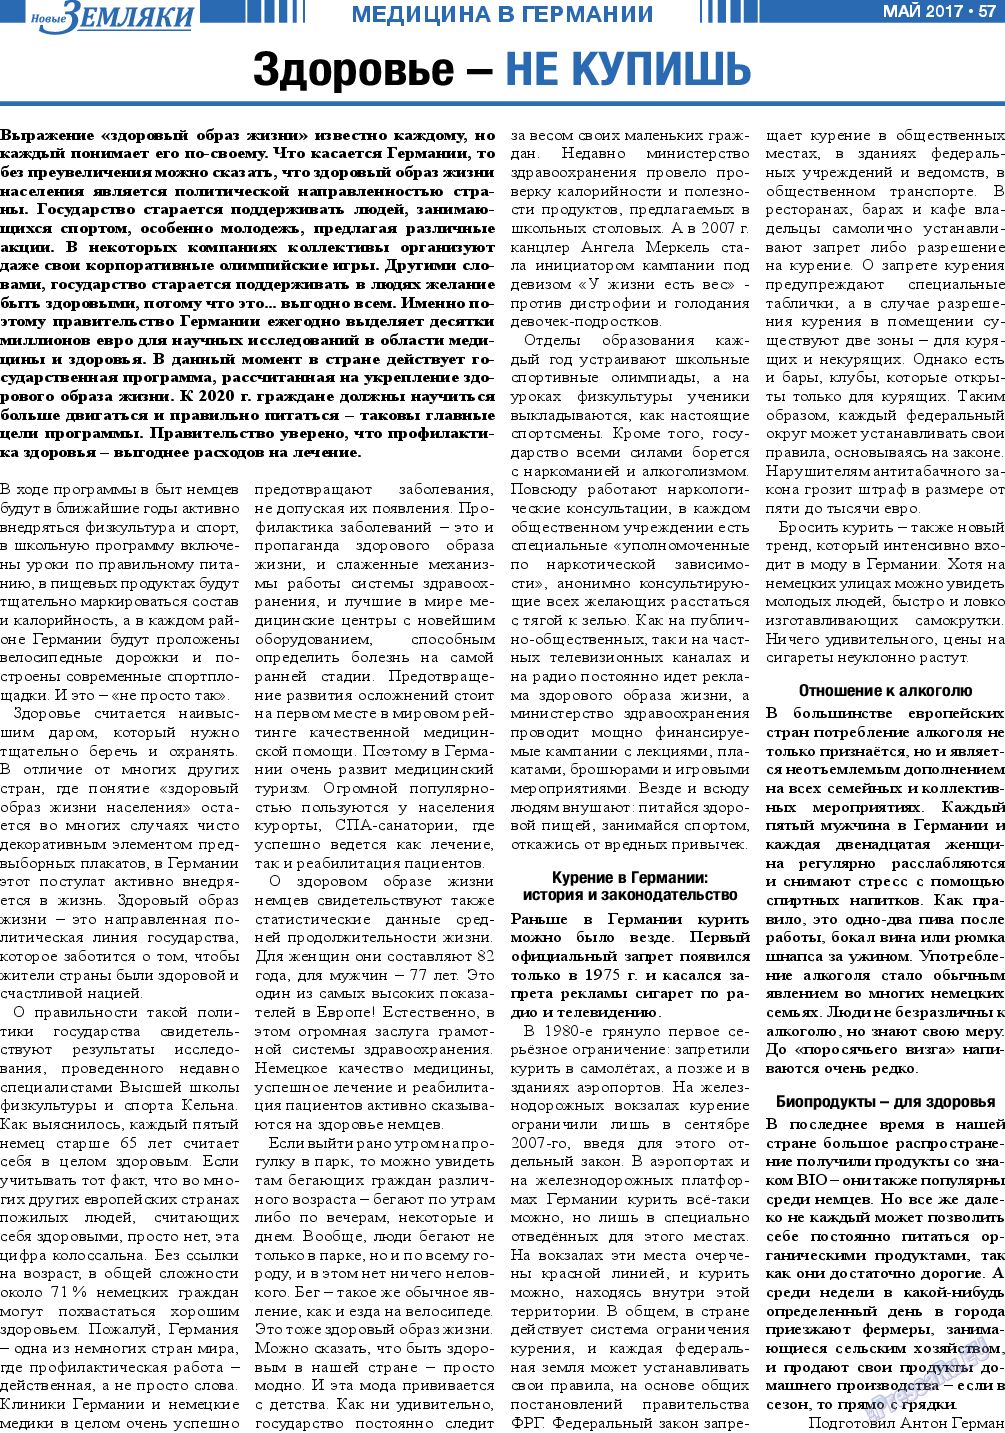 Новые Земляки, газета. 2017 №5 стр.57